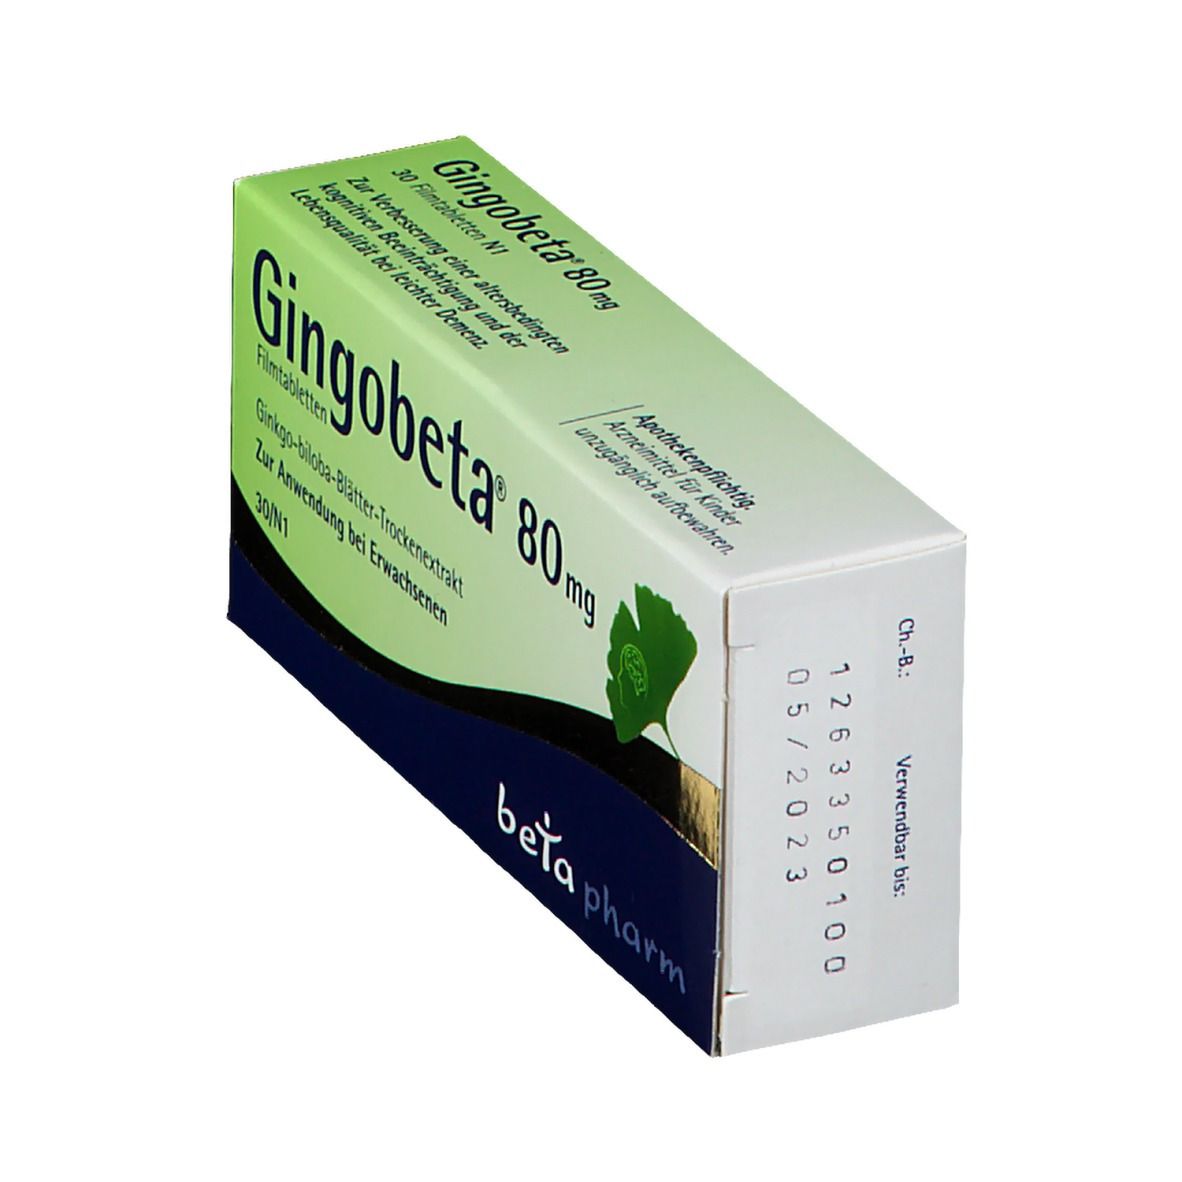 Gingobeta® 80 mg